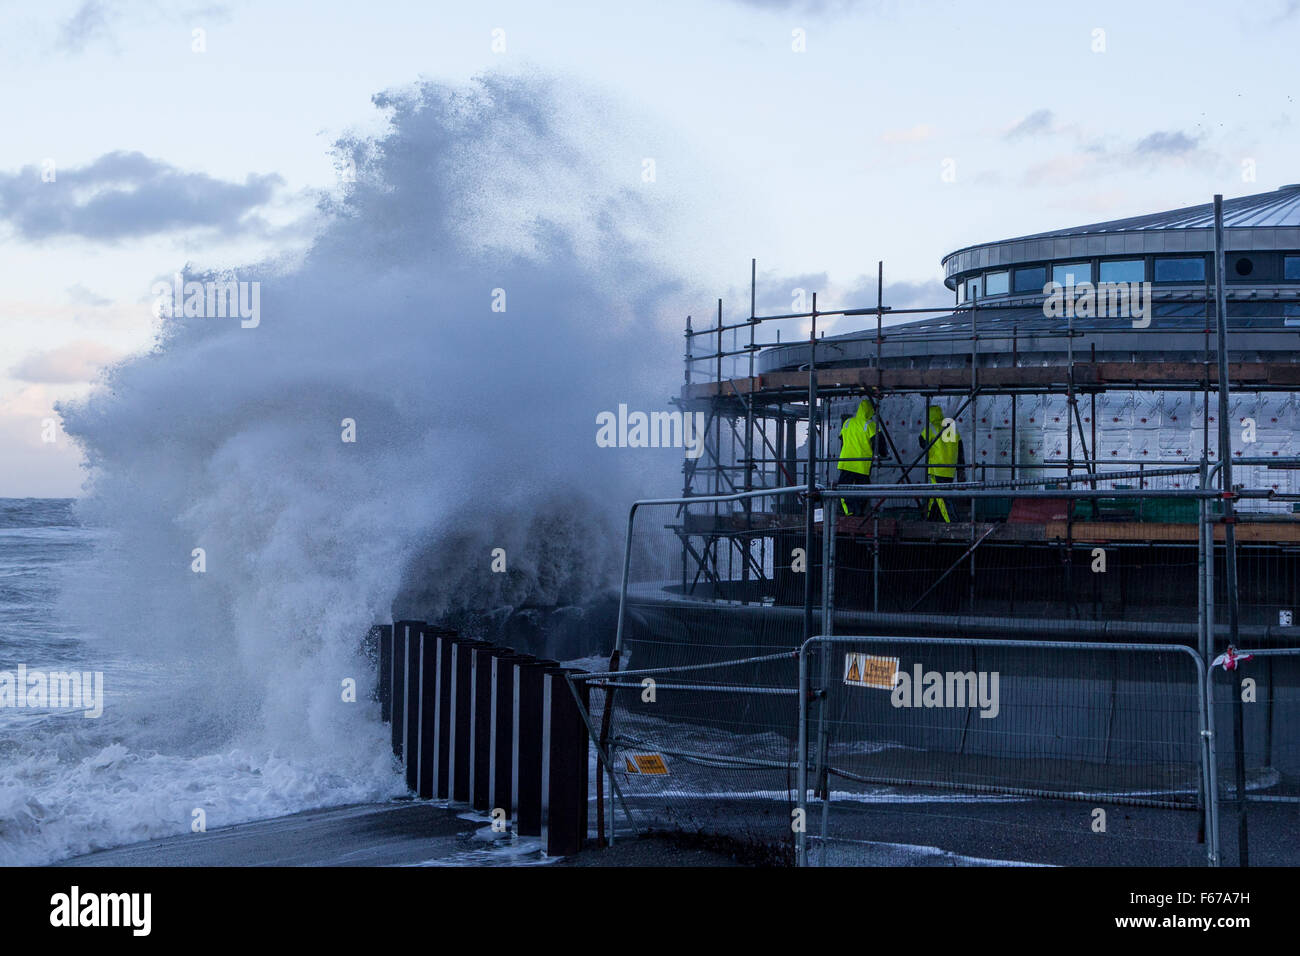 Aberystwyth, Pays de Galles, Royaume-Uni. 13 novembre 2015. Abigail lashes out tempête à Aberystwyth ce matin avec furious vagues tandis que deux constructeurs d'essayer de travailler sur l'échafaudage du nouveau kiosque sur la promenade. Crédit : Ian Jones/Alamy Live News Banque D'Images